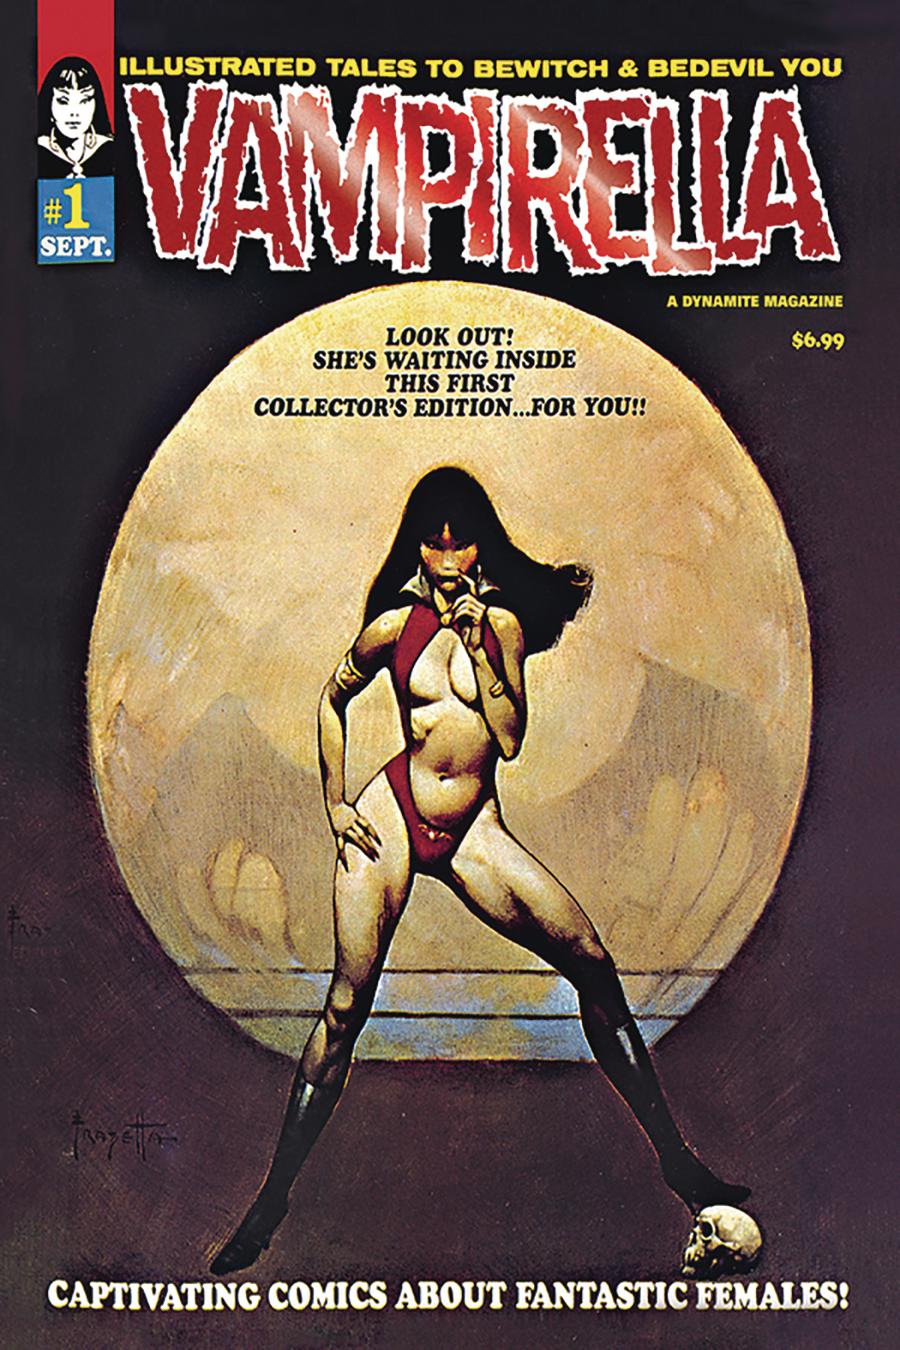 Vampirella Magazine #1 1969 Replica Edition Cover B Limited Red Foil Cover